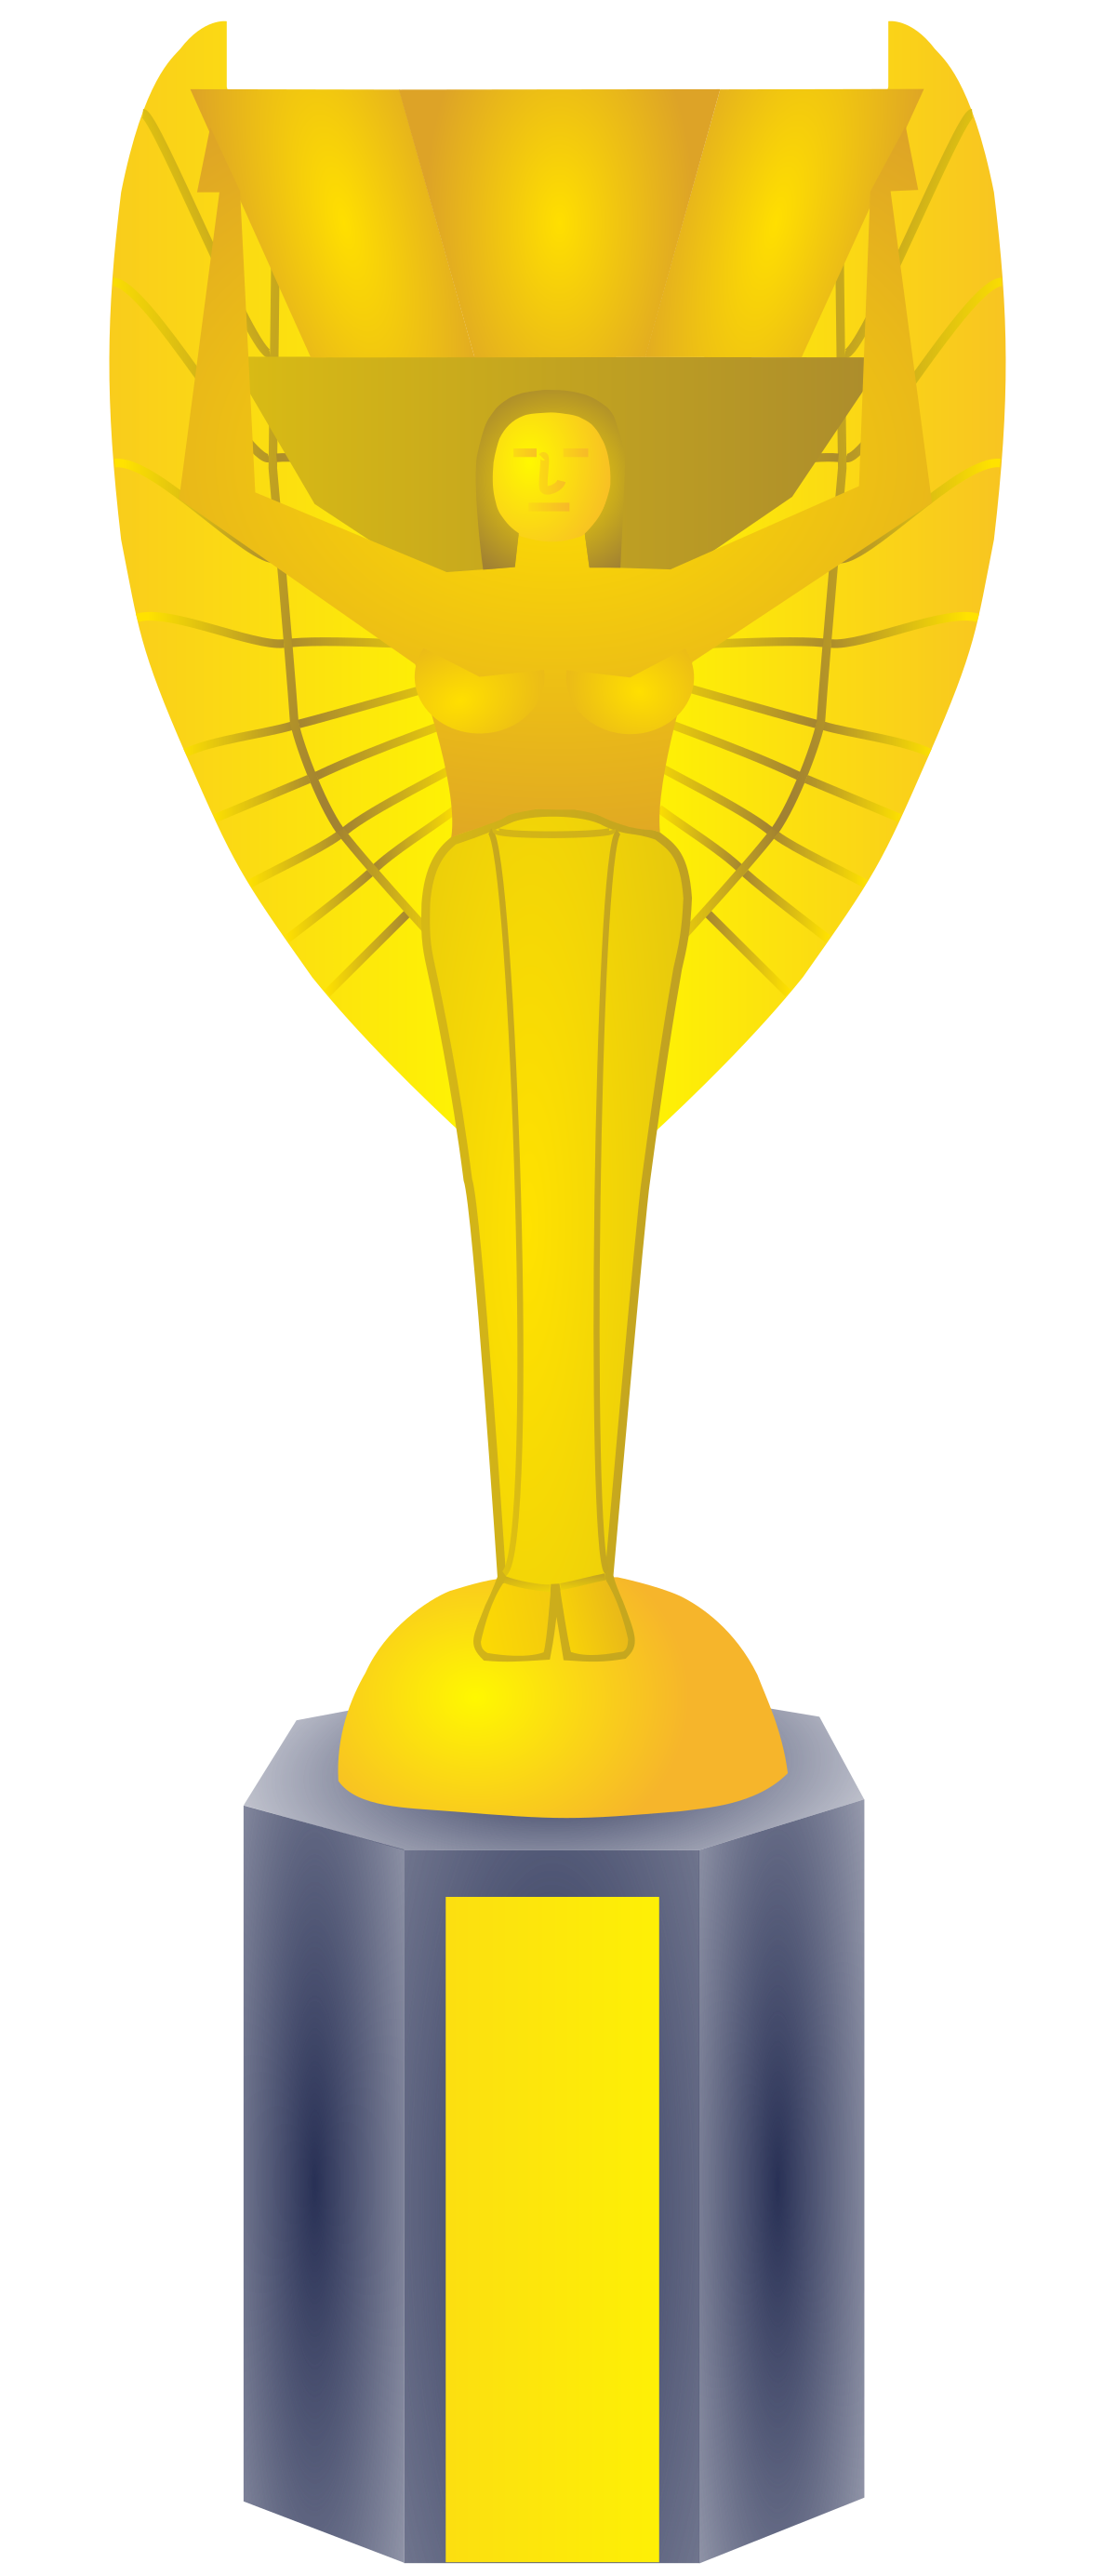 Award Cup Transparent Clip Art Image